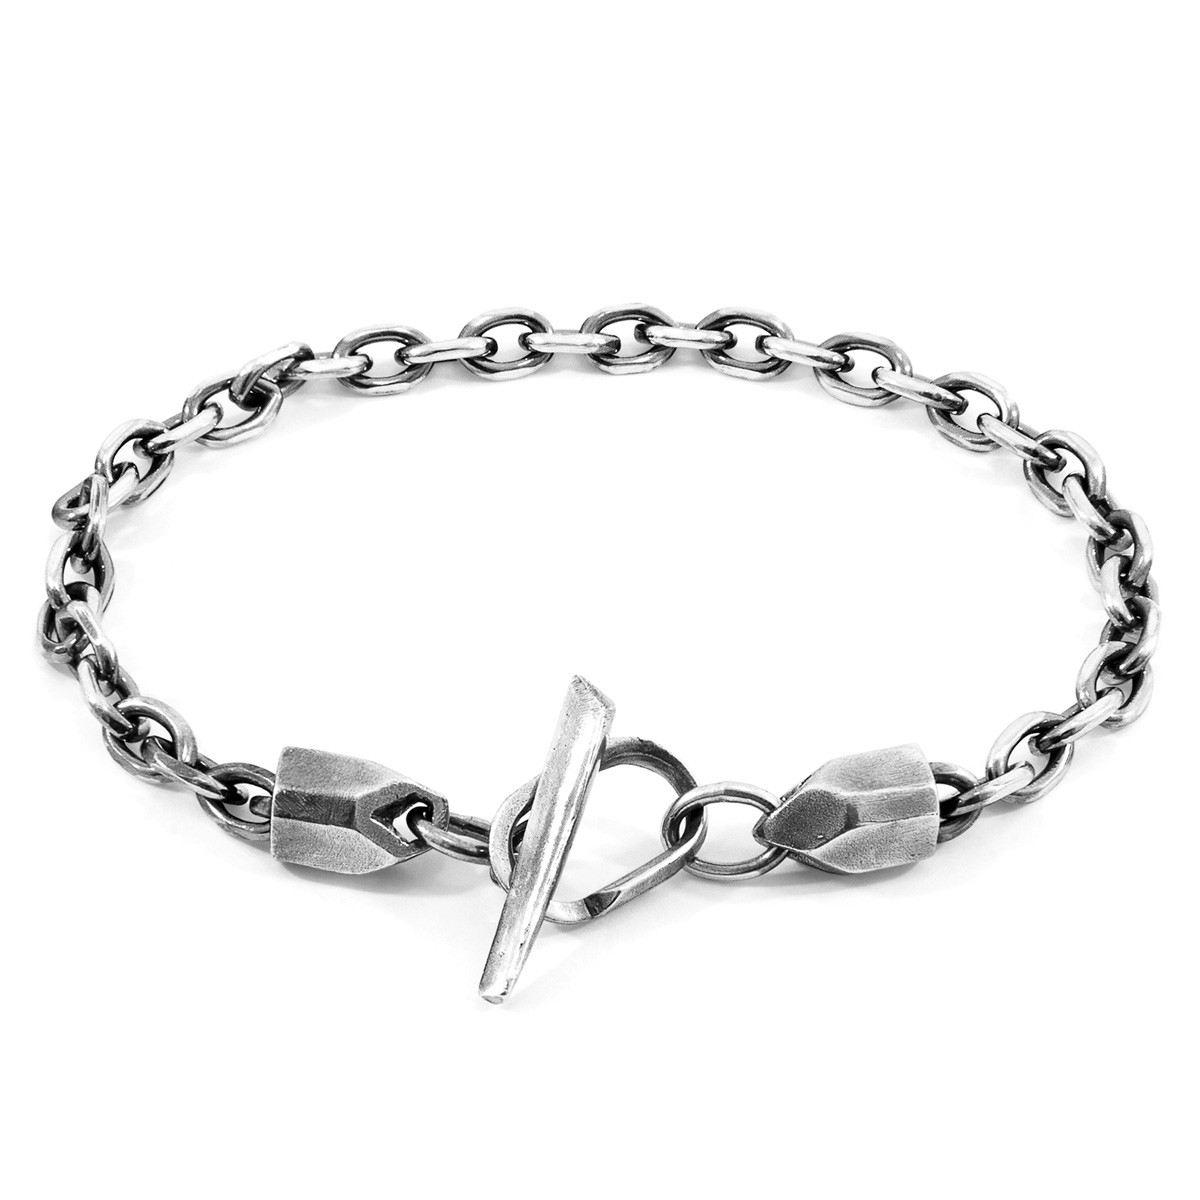 Halyard Skipper Silver Chain Bracelet